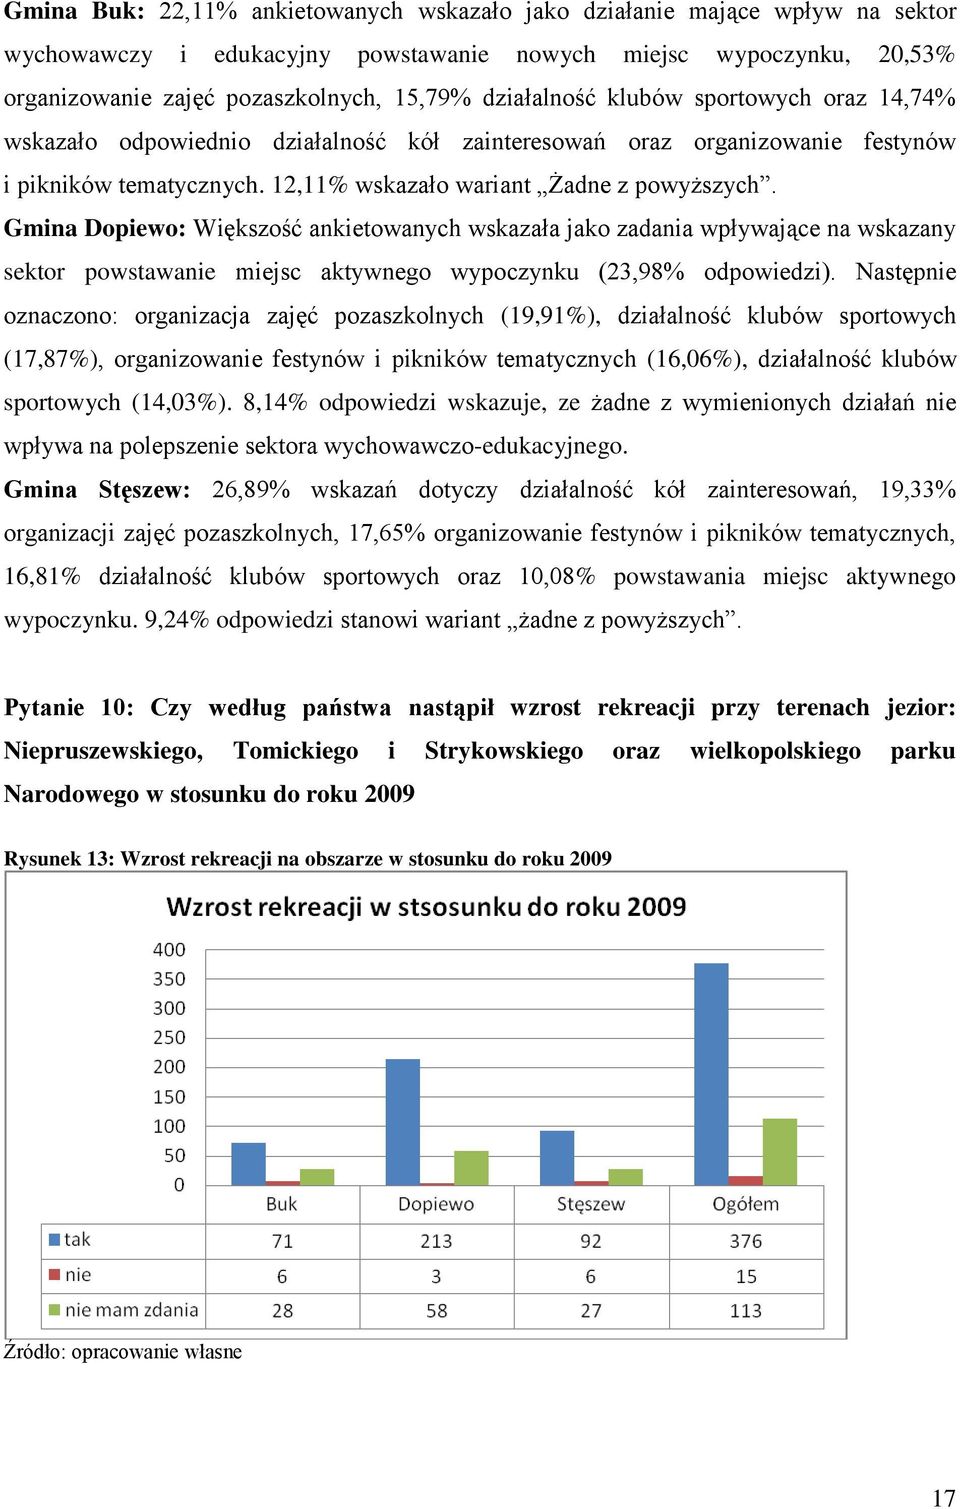 Gmina Dopiewo: Większość ankietowanych wskazała jako zadania wpływające na wskazany sektor powstawanie miejsc aktywnego wypoczynku (23,98% odpowiedzi).